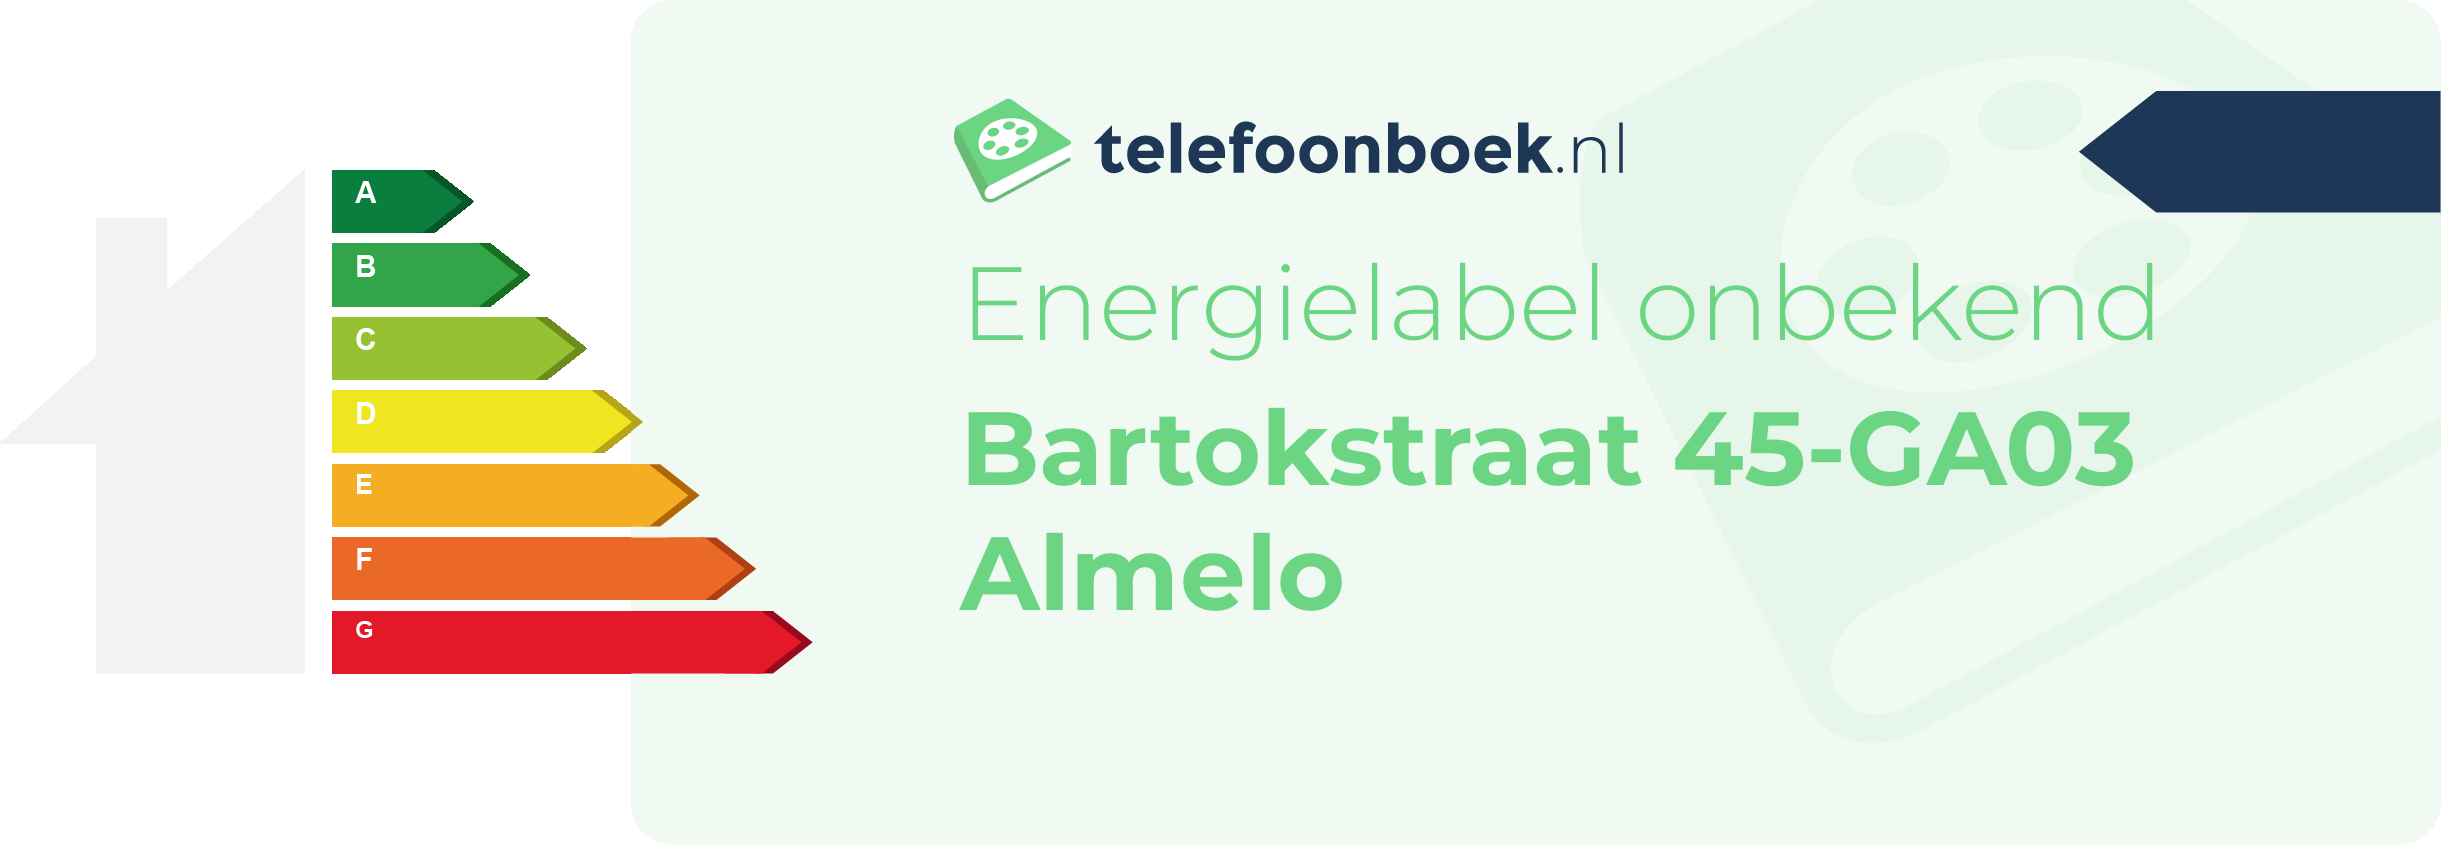 Energielabel Bartokstraat 45-GA03 Almelo